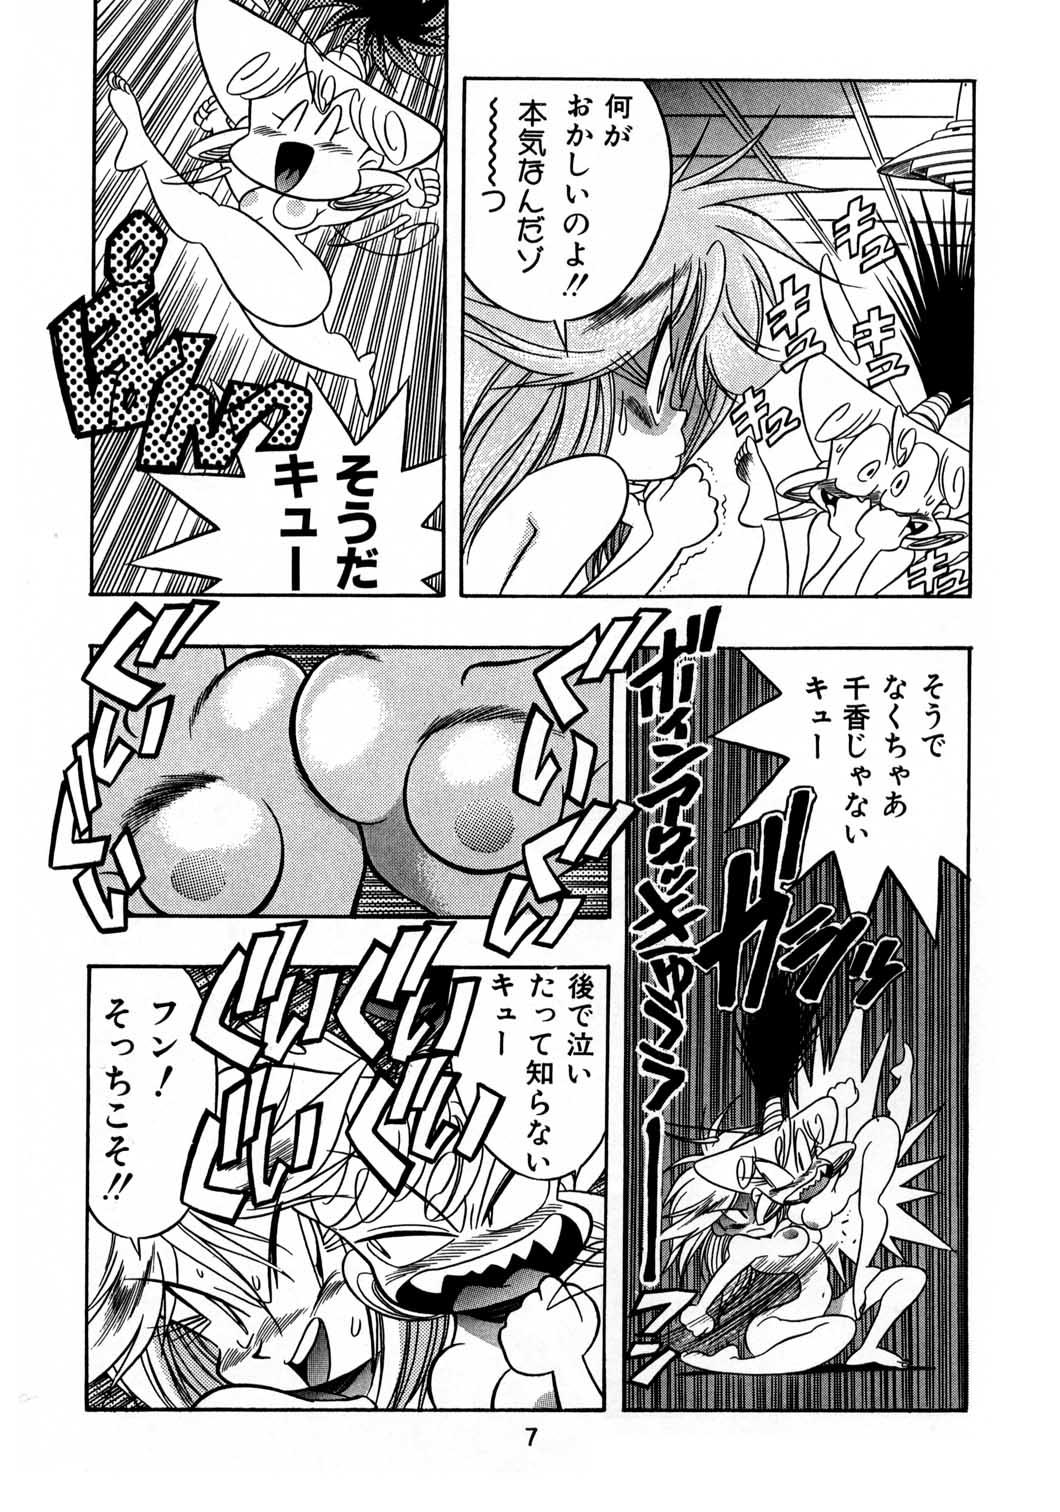 Nudist Henreikai Special Vol. 8 - Macross 7 X - Page 6